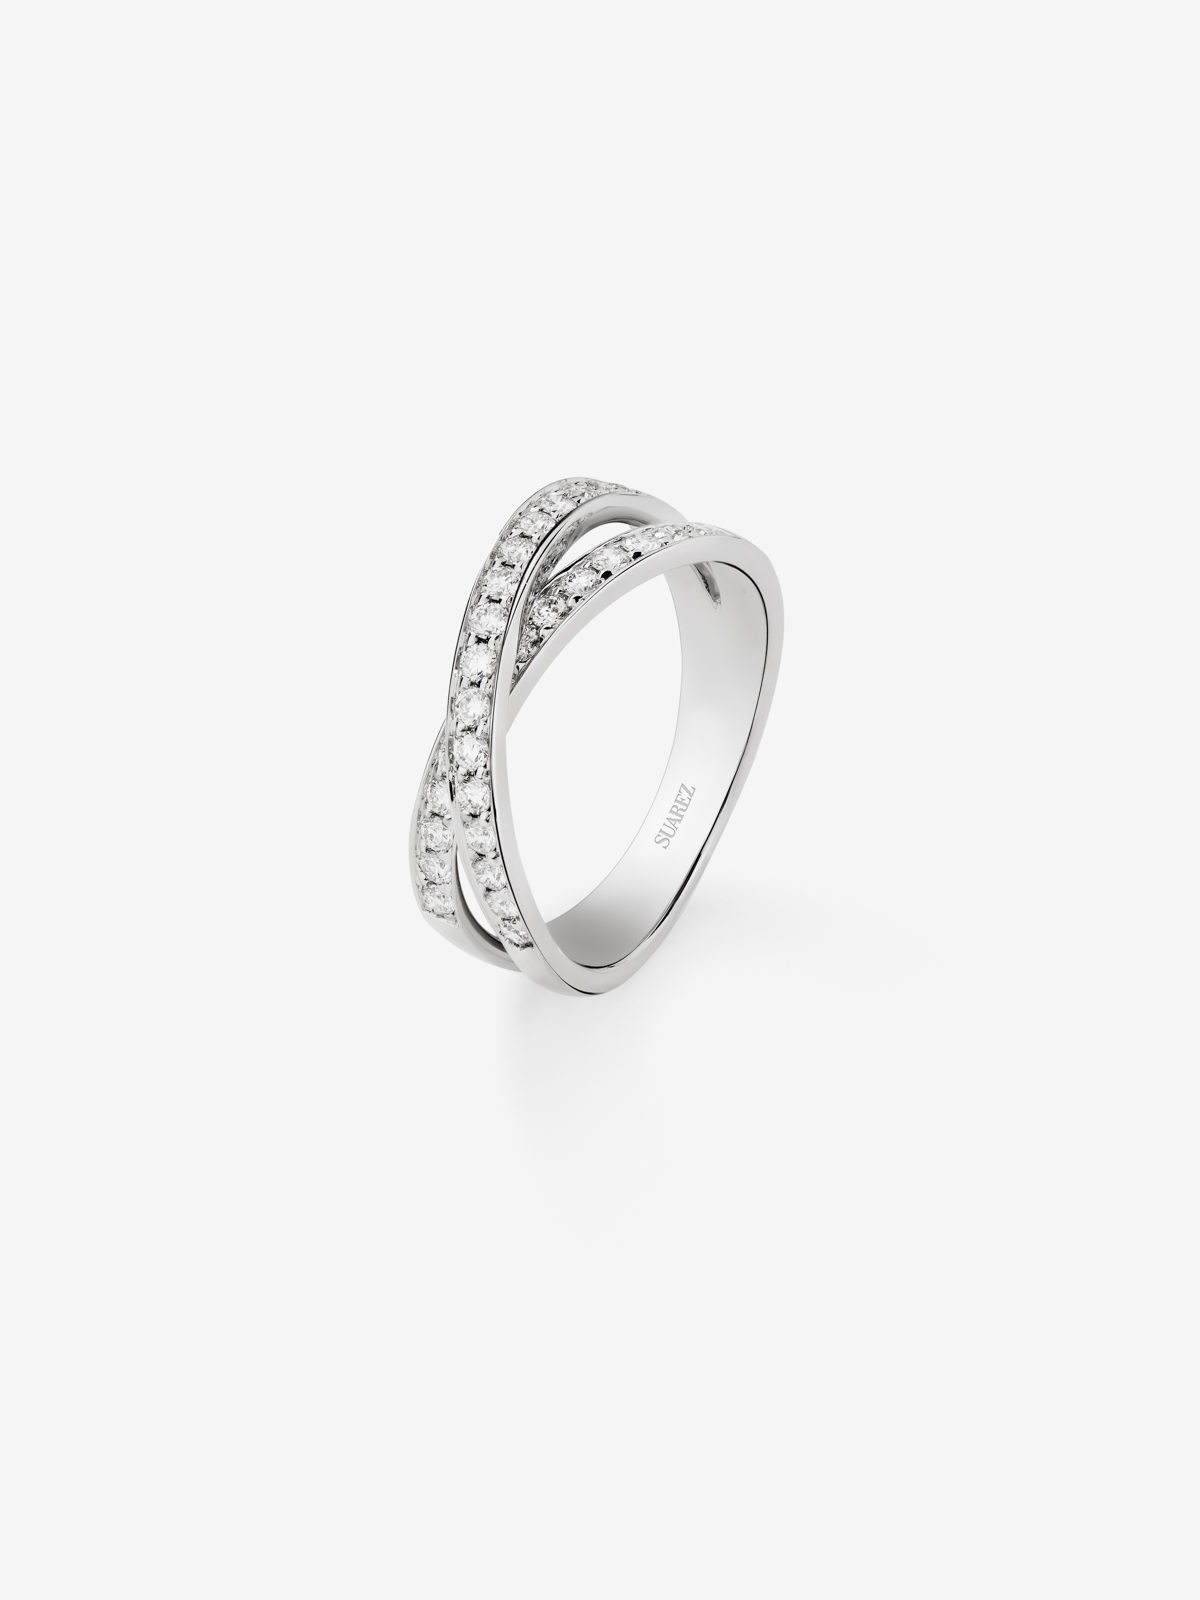 18K White Gold Double Diamond Ring